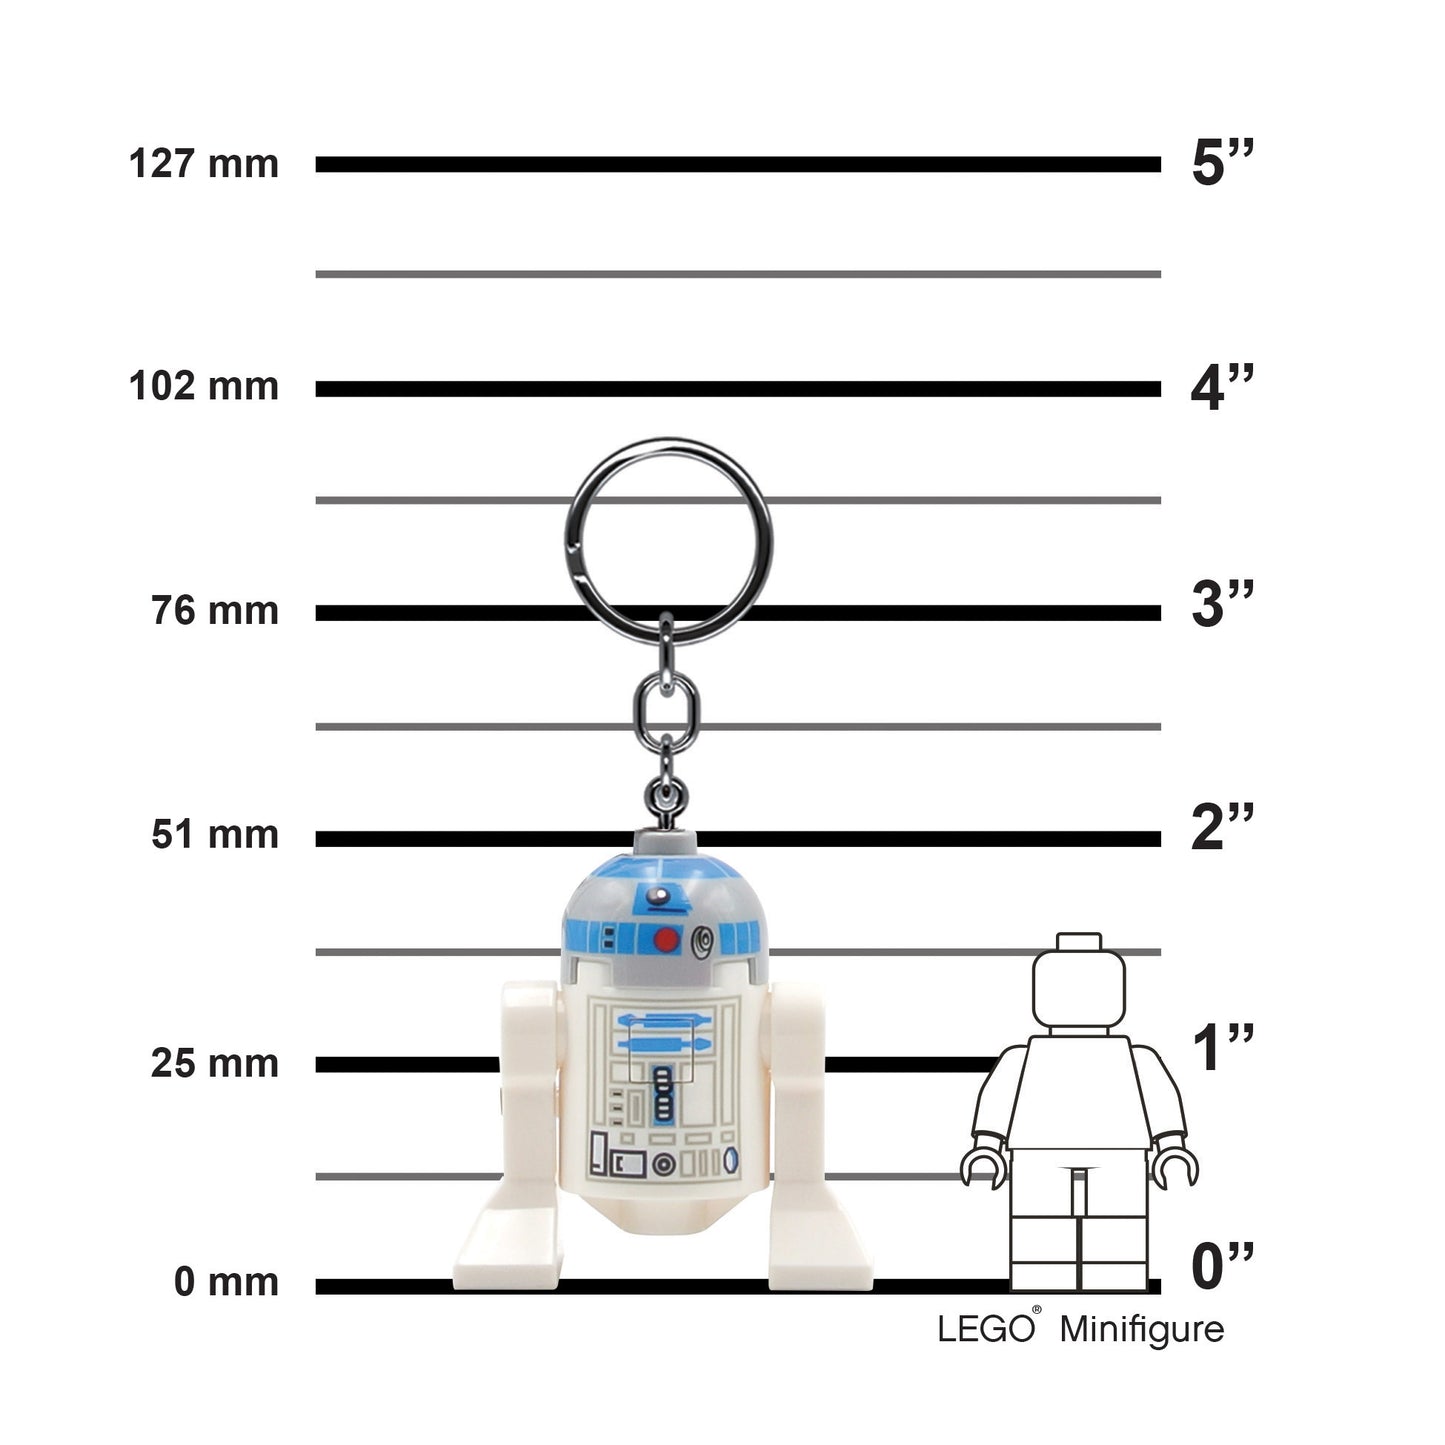 IQ 樂高 星際大戰系列 R2-D2機器人 LED發光鑰匙圈 (KE21)